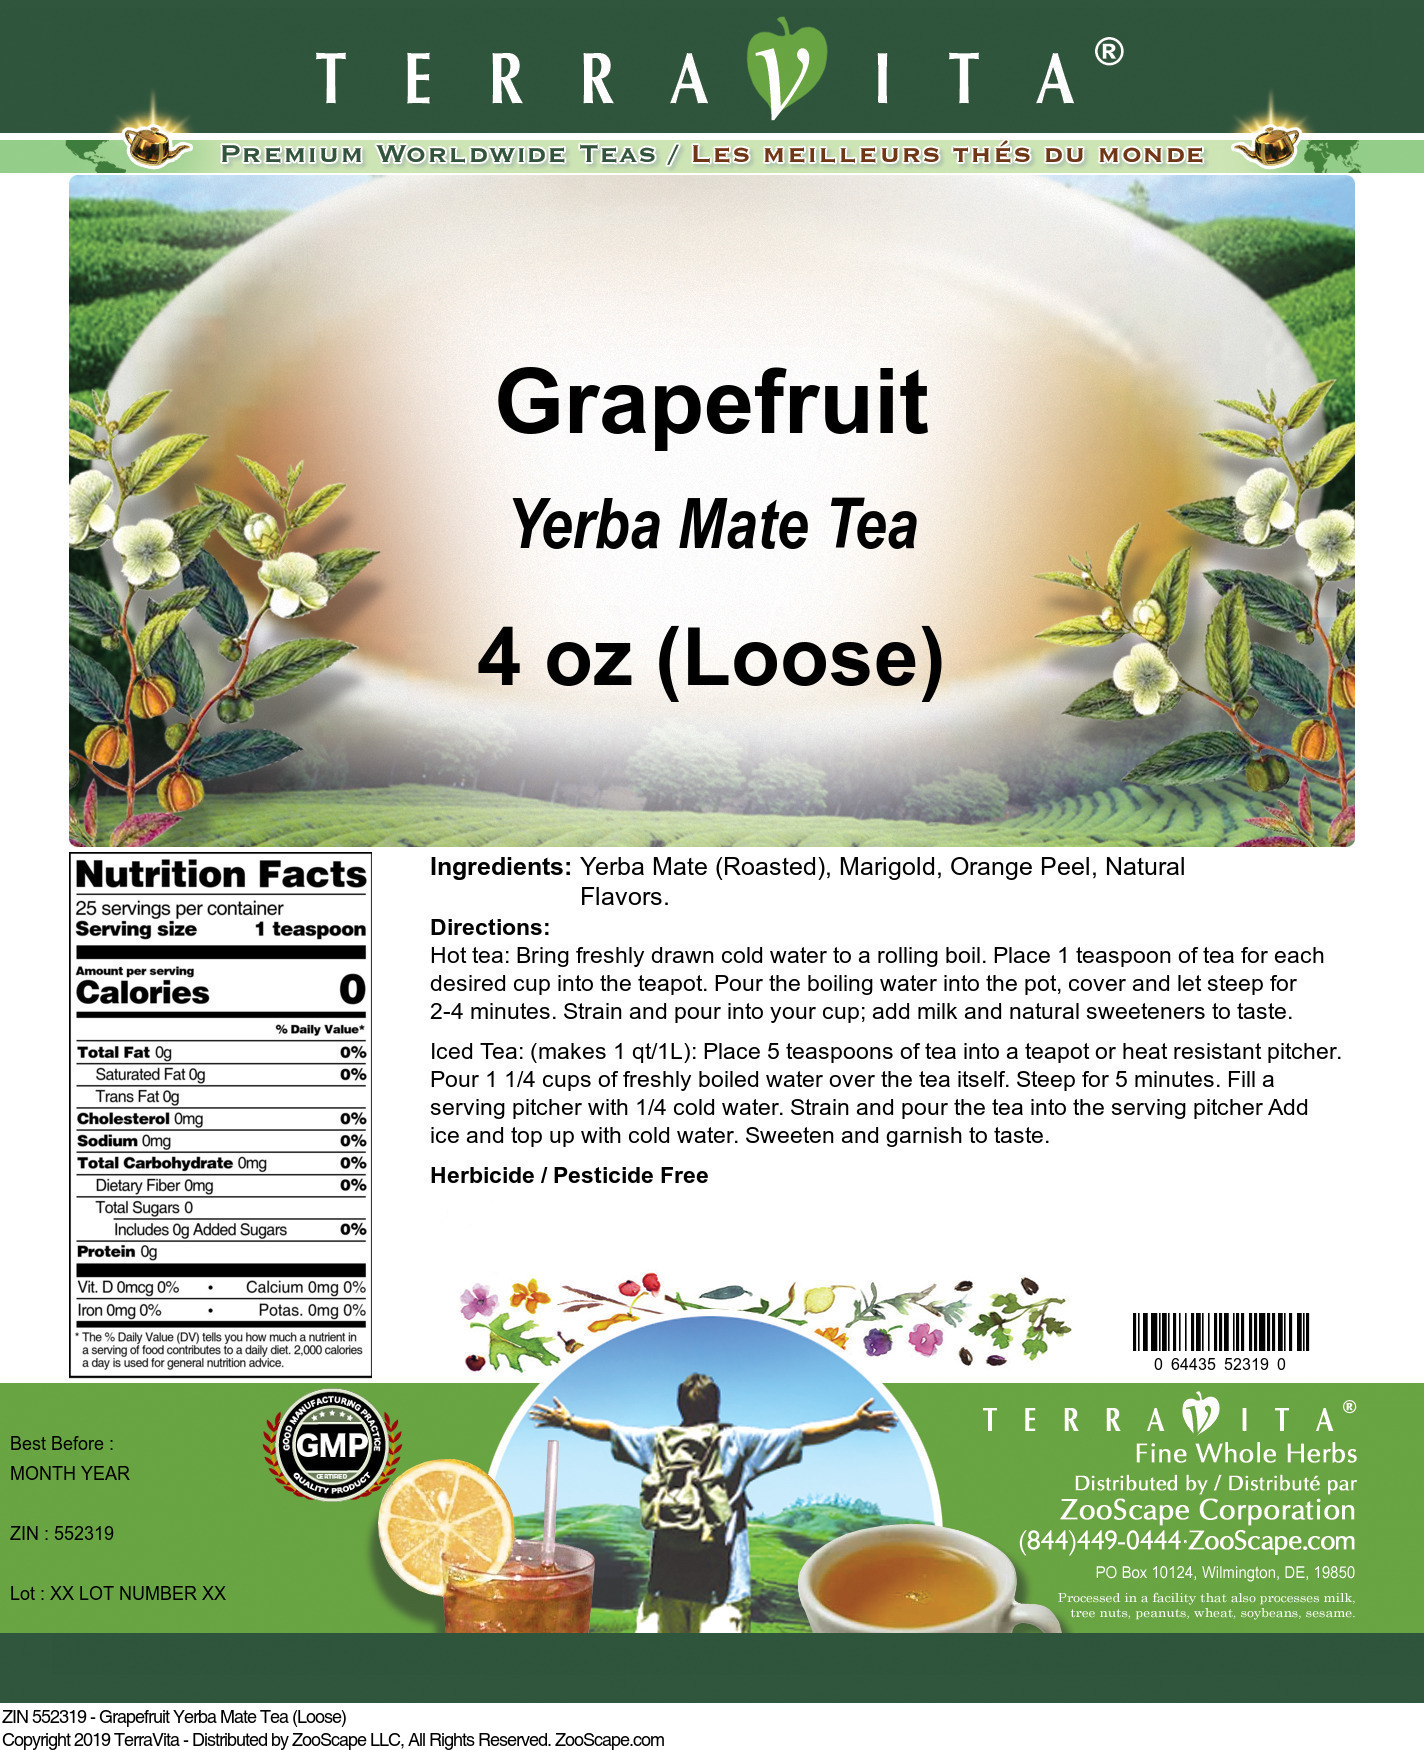 Grapefruit Yerba Mate Tea (Loose) - Label